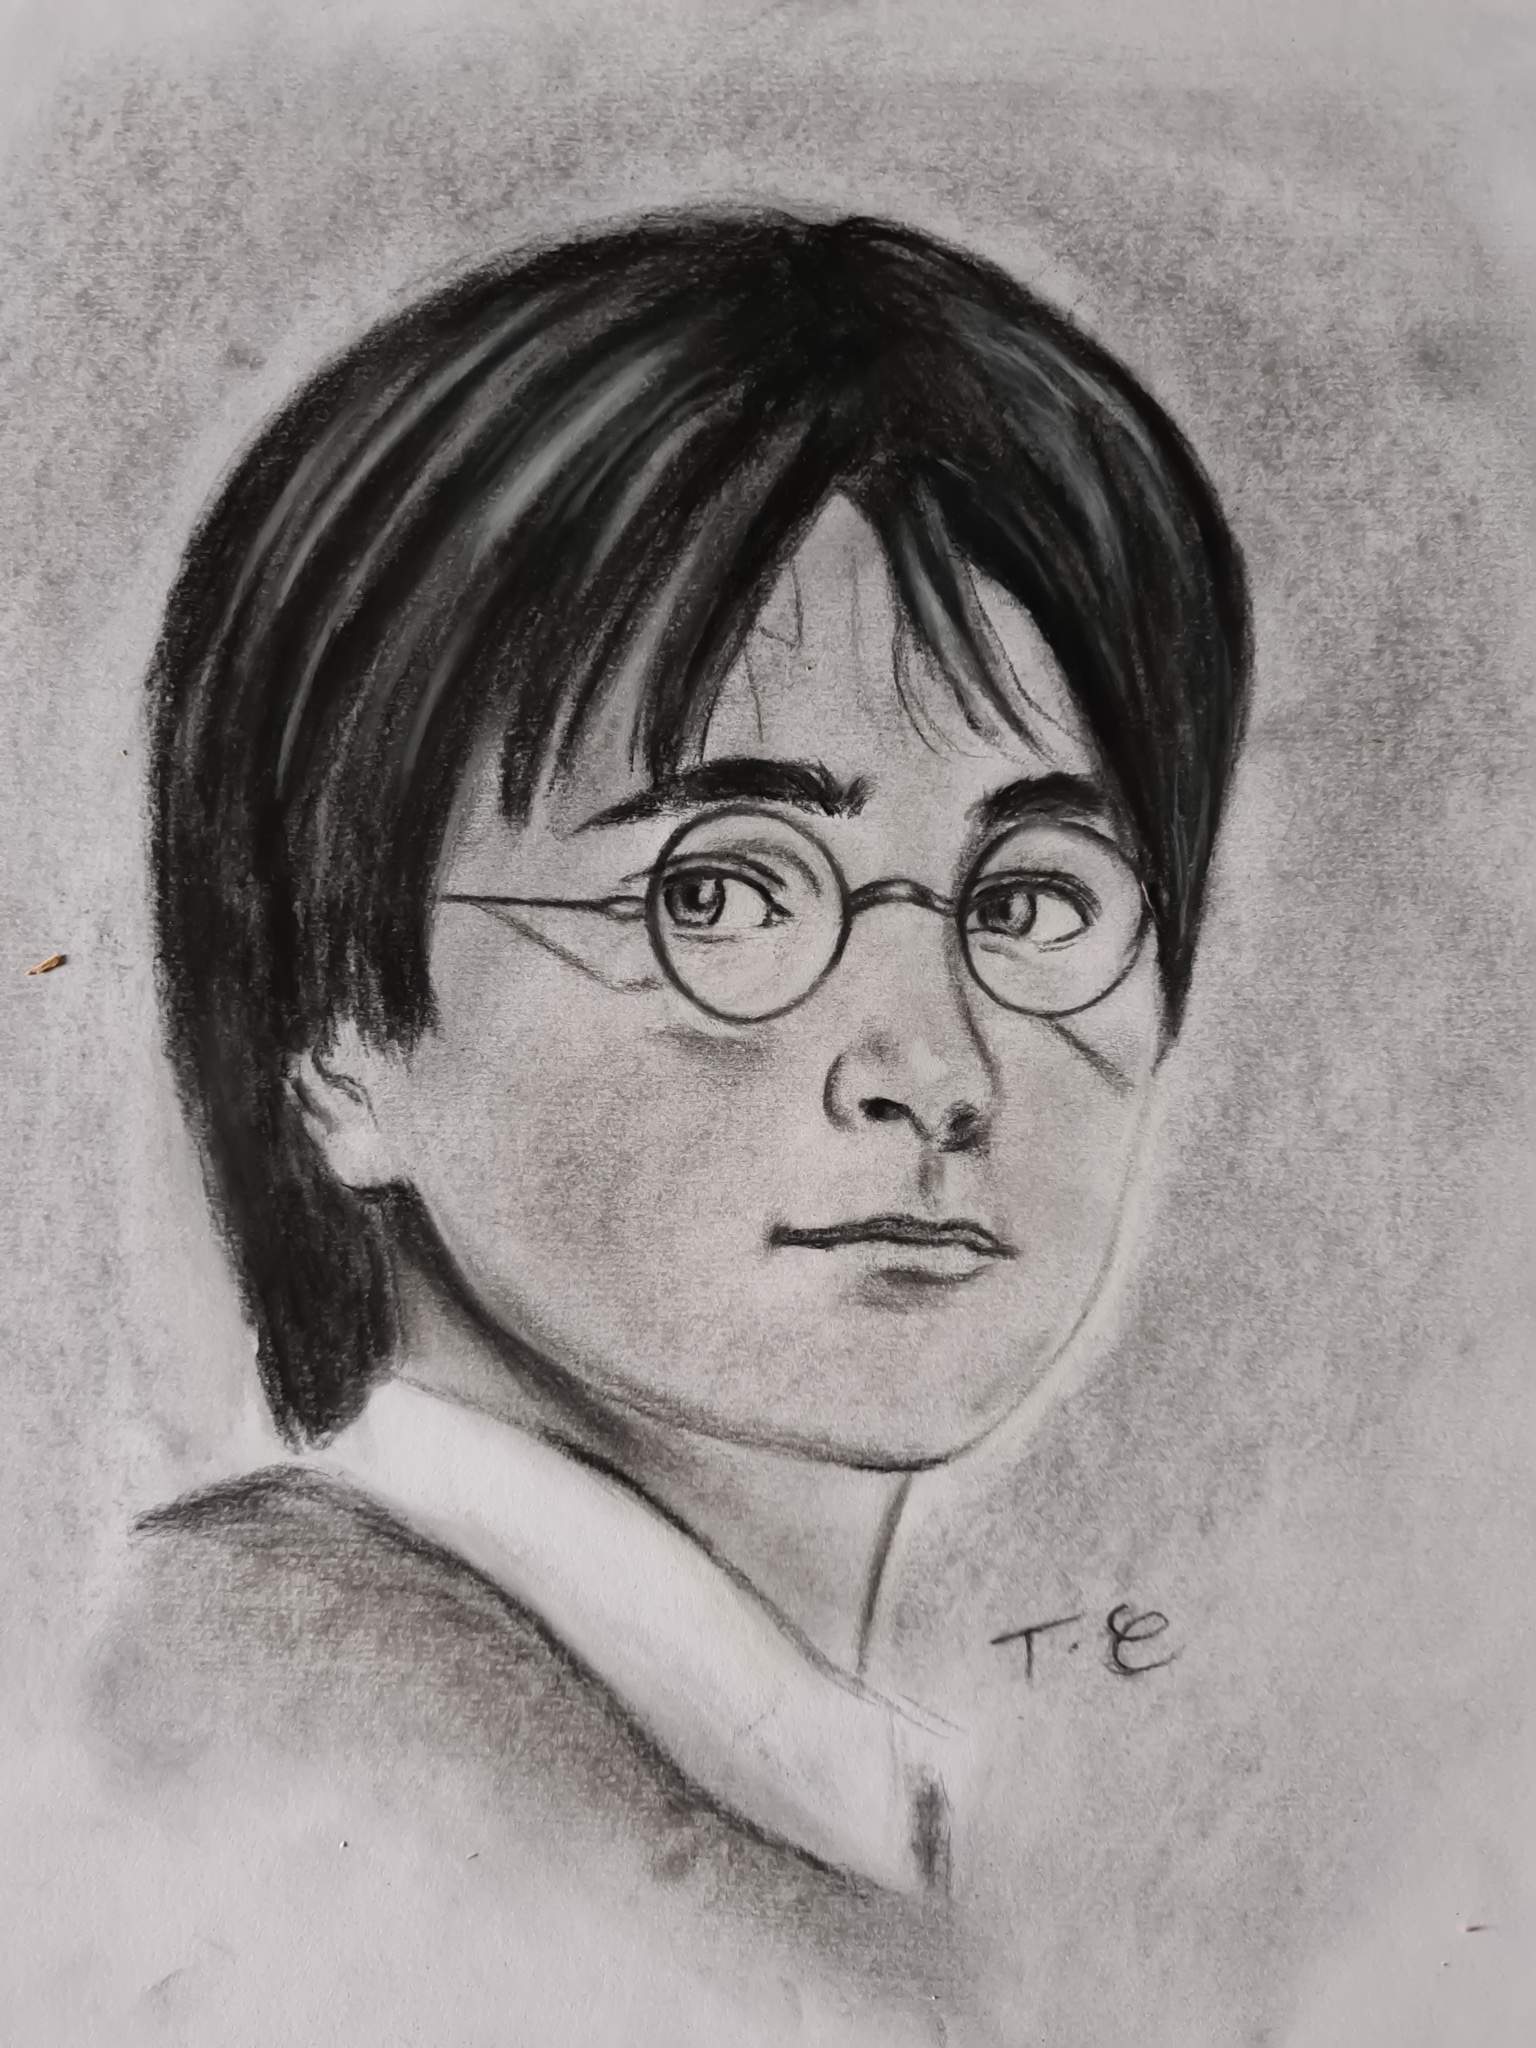 Dessin de Harry Potter réalisé au fusain il y a quelques mois 🤗 | Harry ...